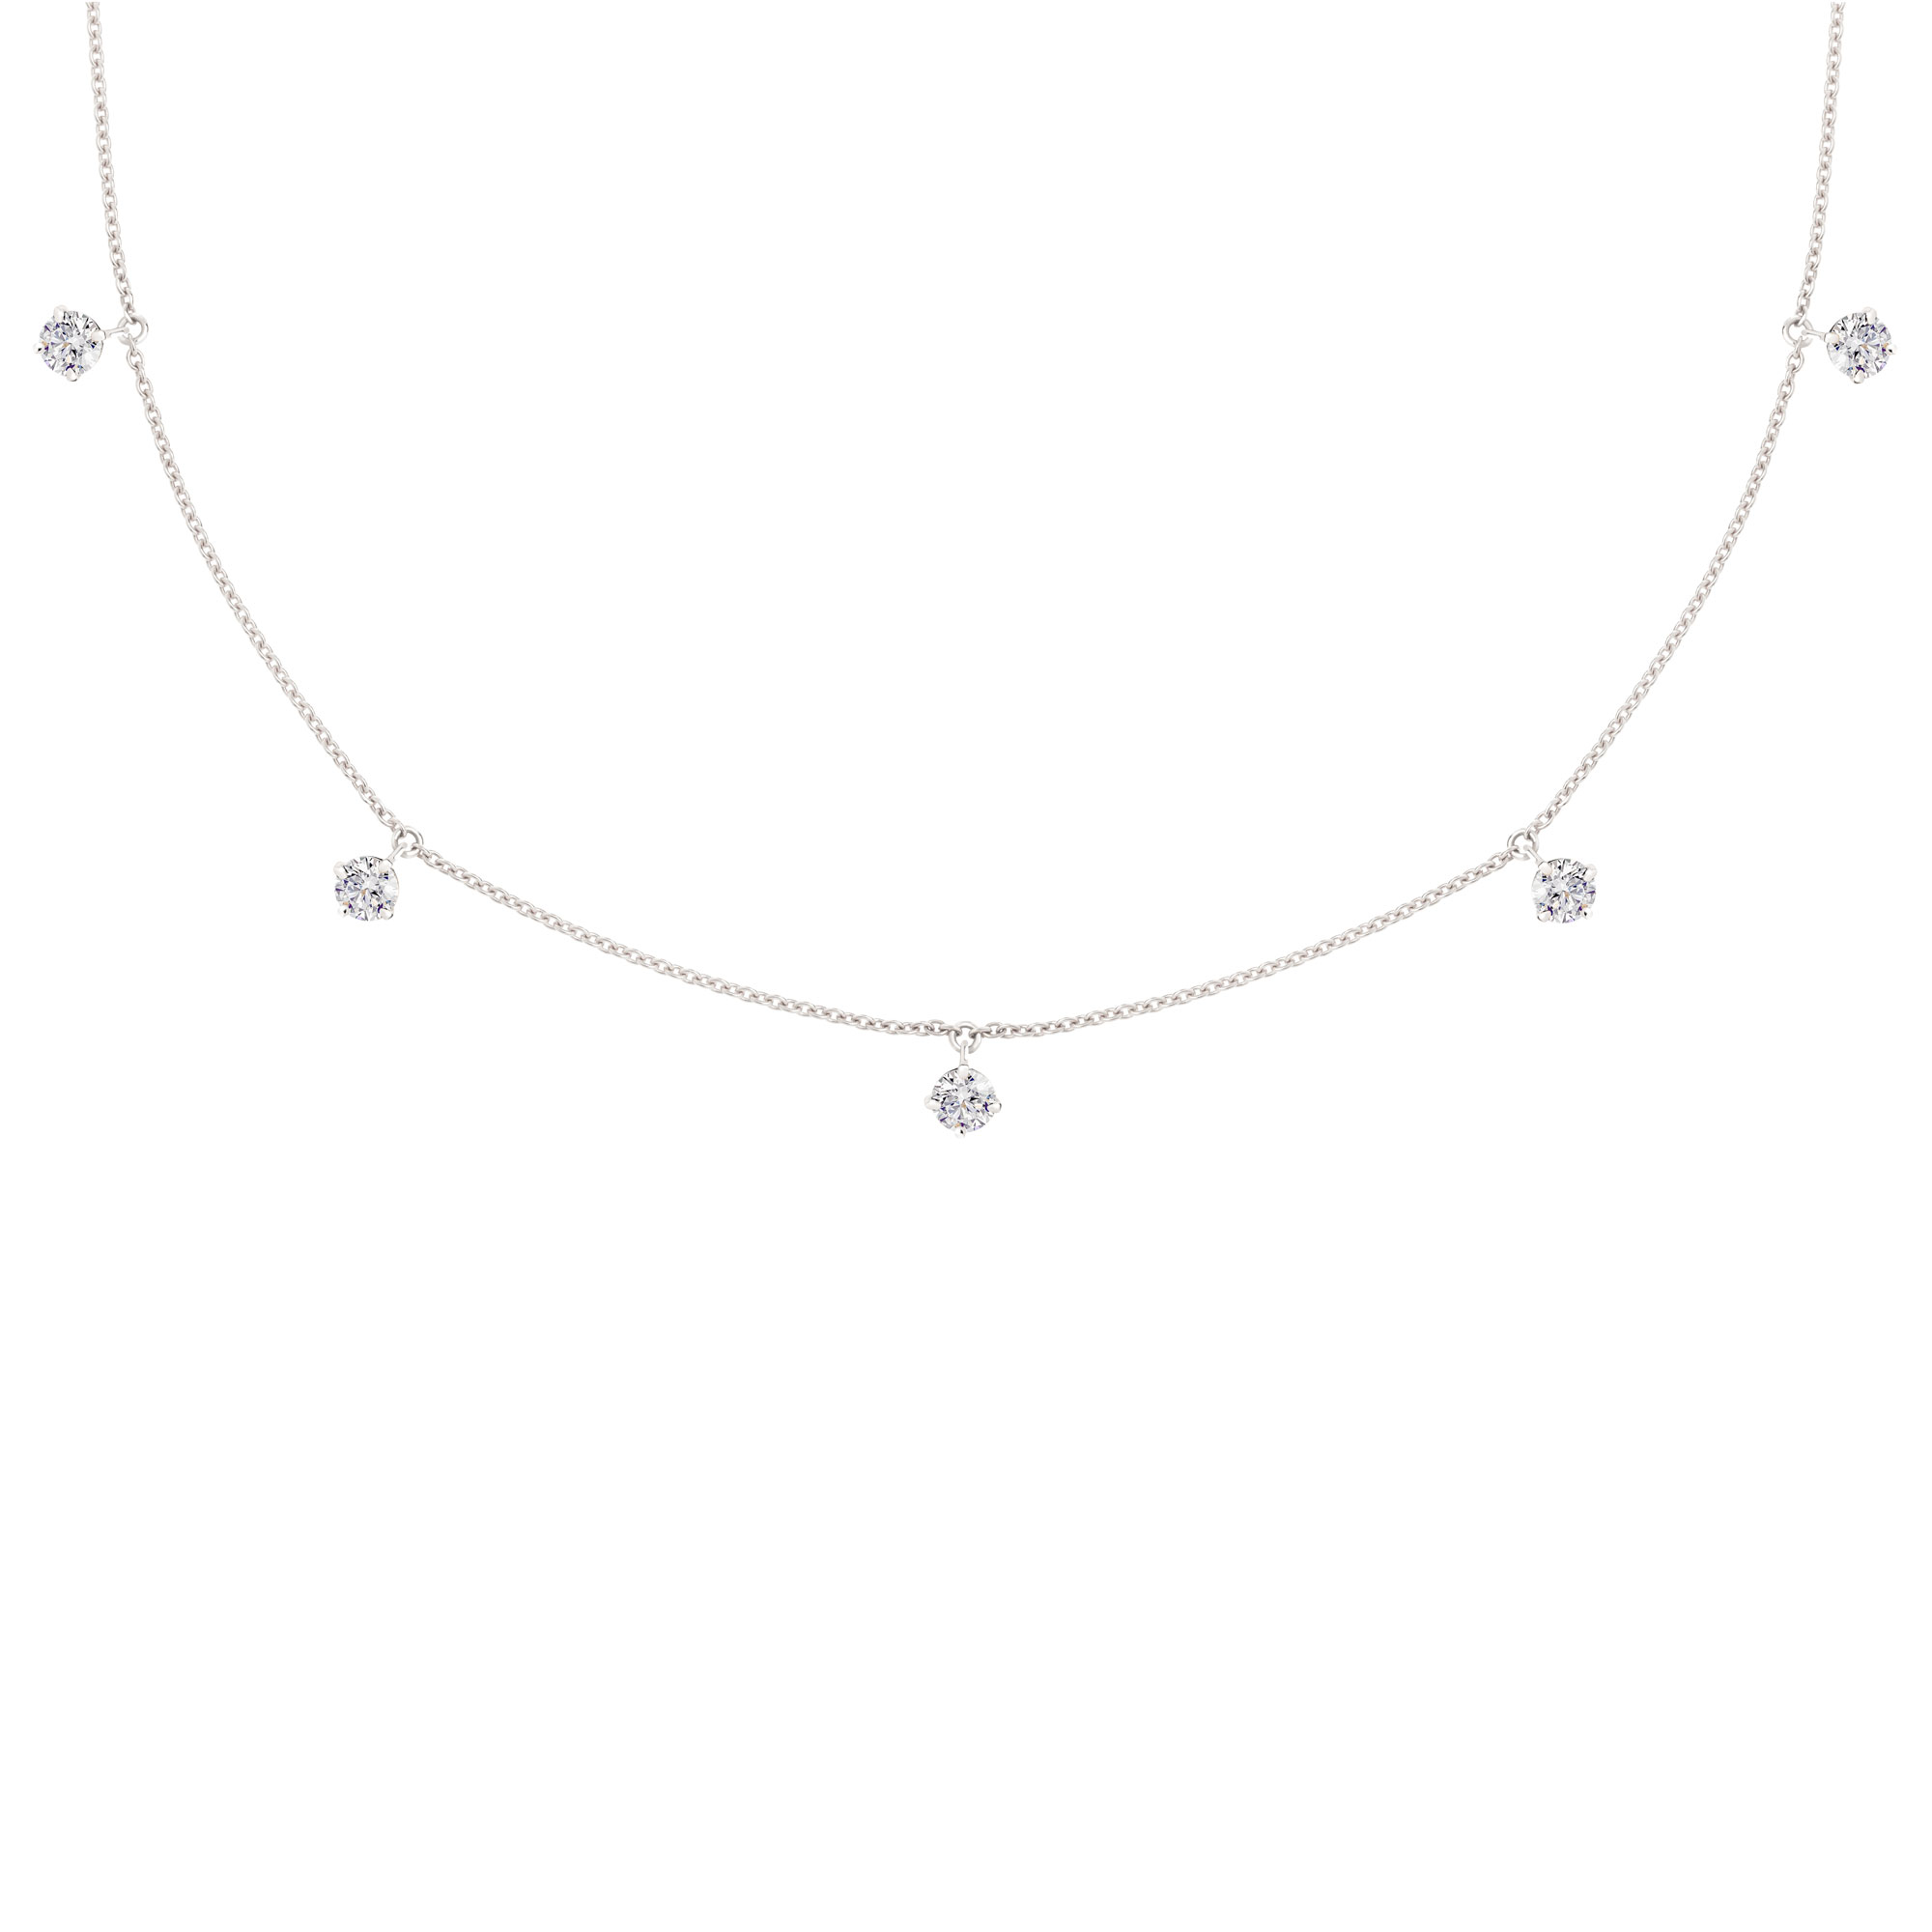 une chaîne en or avec 5 diamants naturels montés sur griffes tout au long du collier.